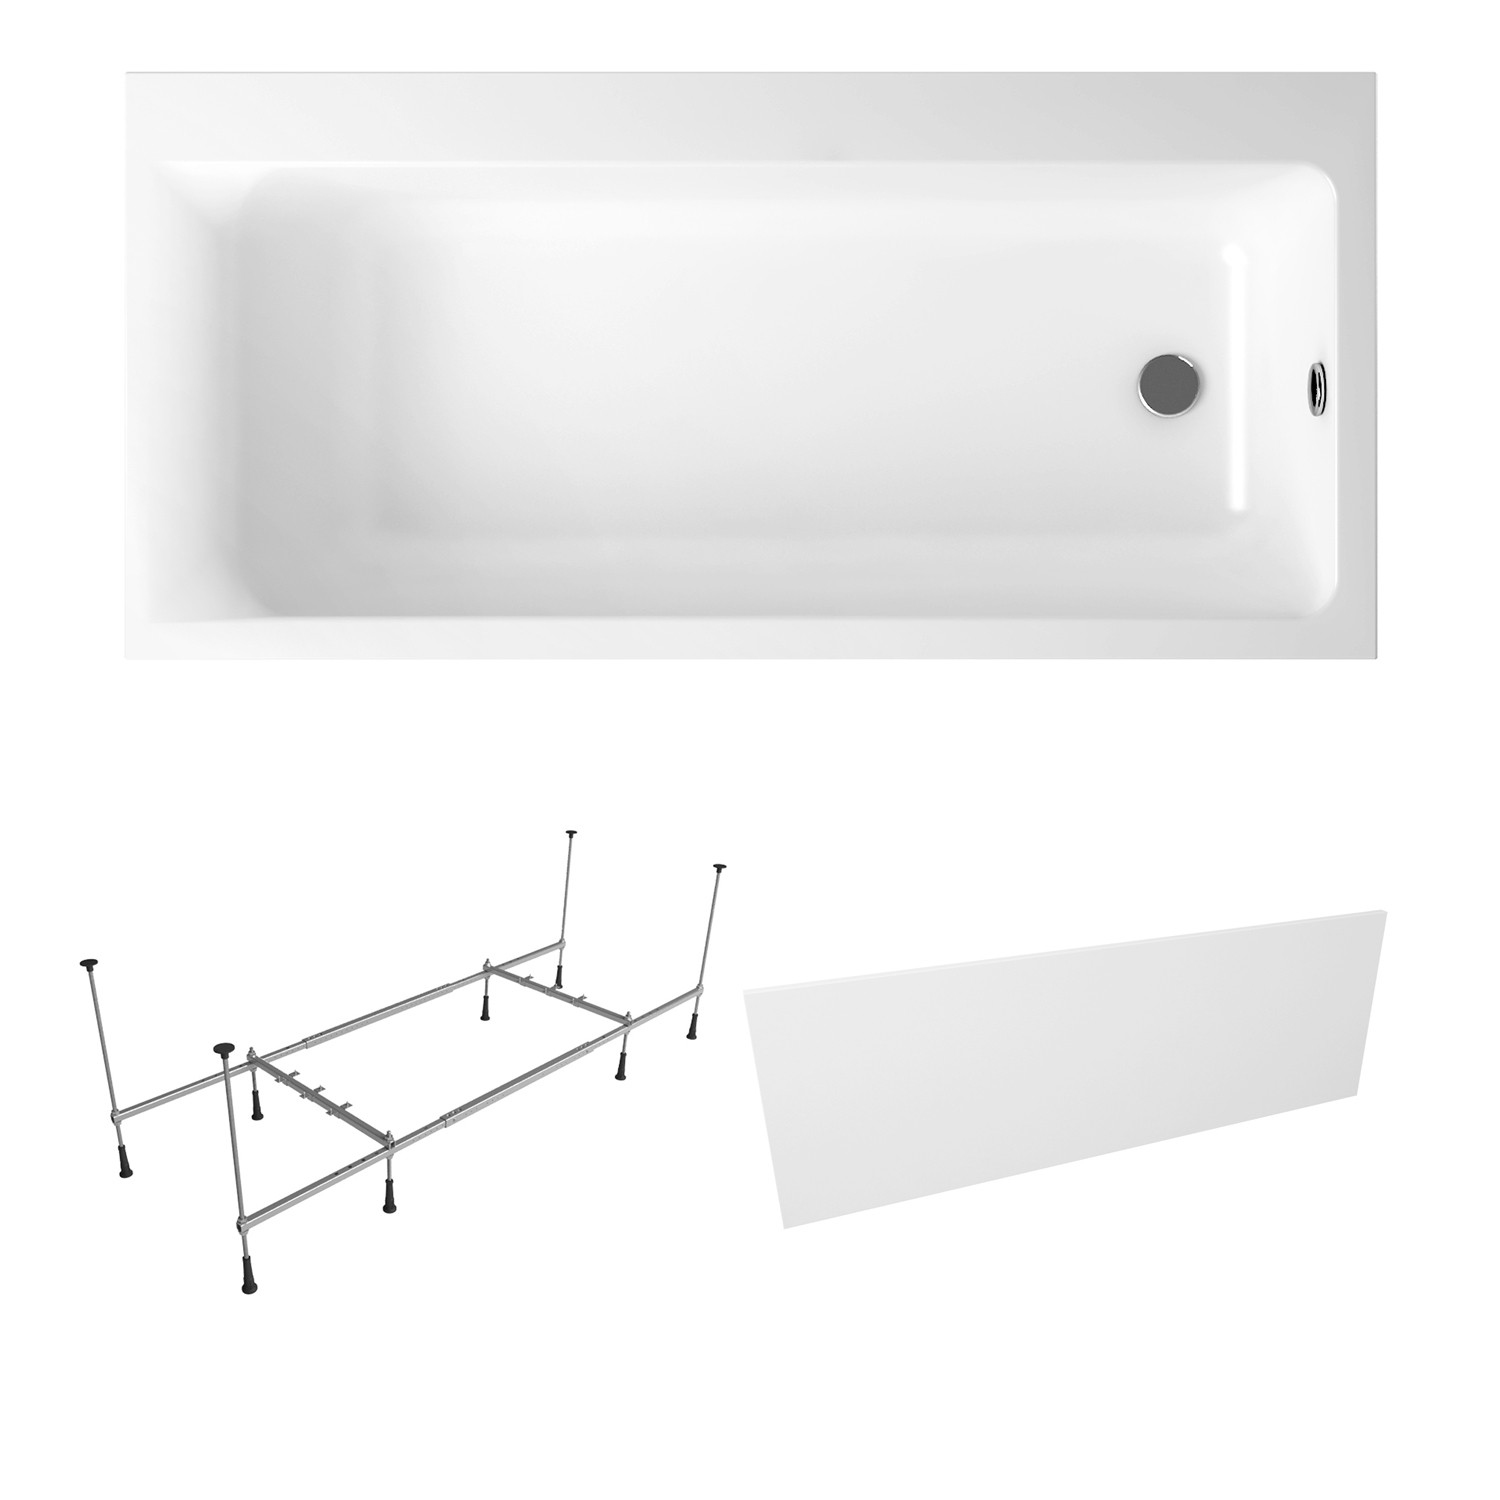 Акриловая ванна Lavinia Boho Catani S2-3712170R набор 3 в 1, правый разворот 170х80 см правый экран excellent